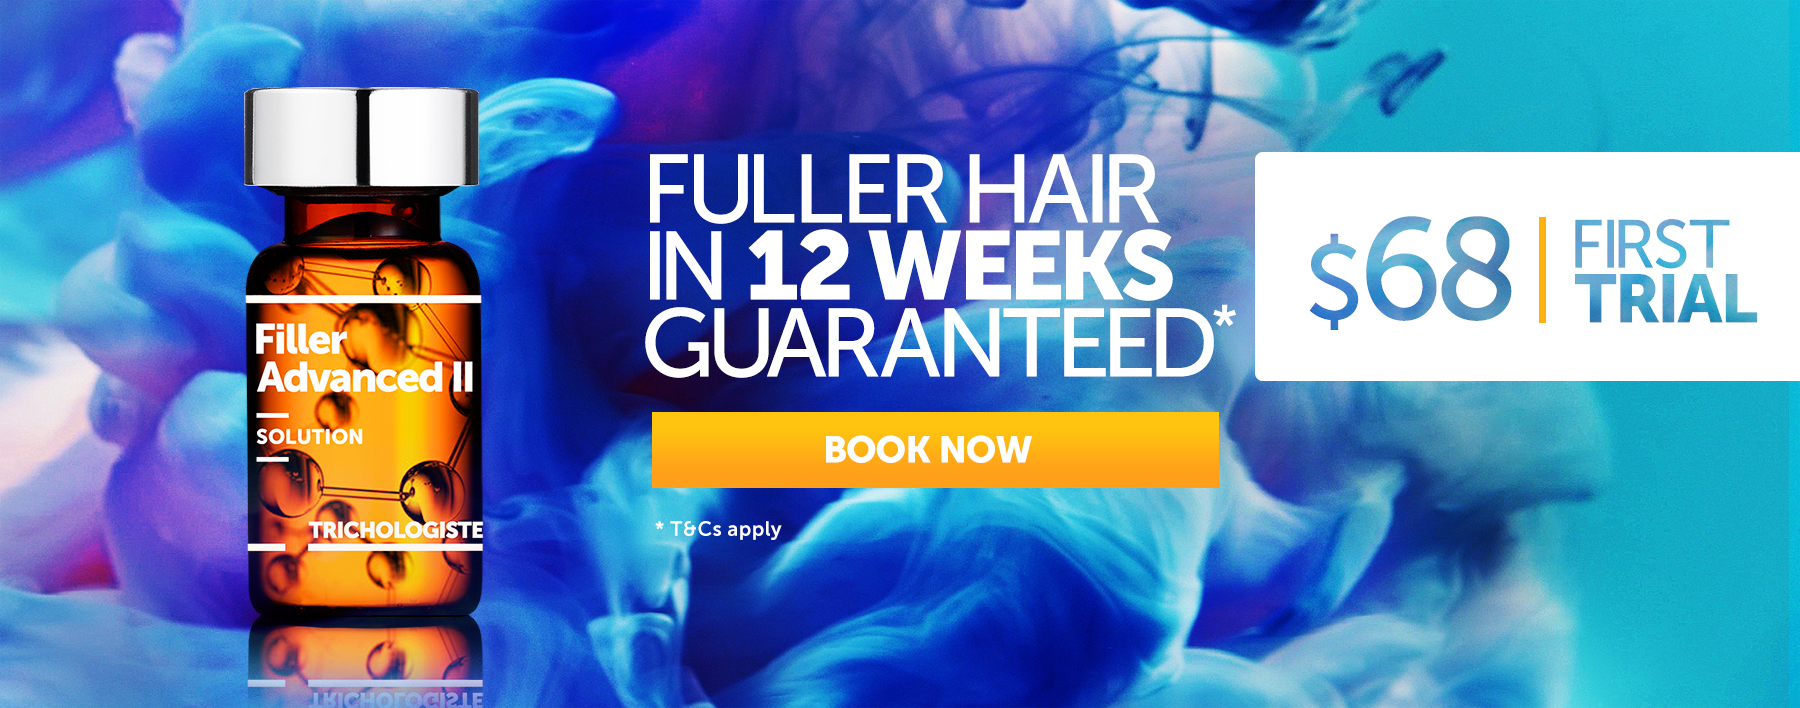 Fuller Hair in 12 weeks, Guaranteed